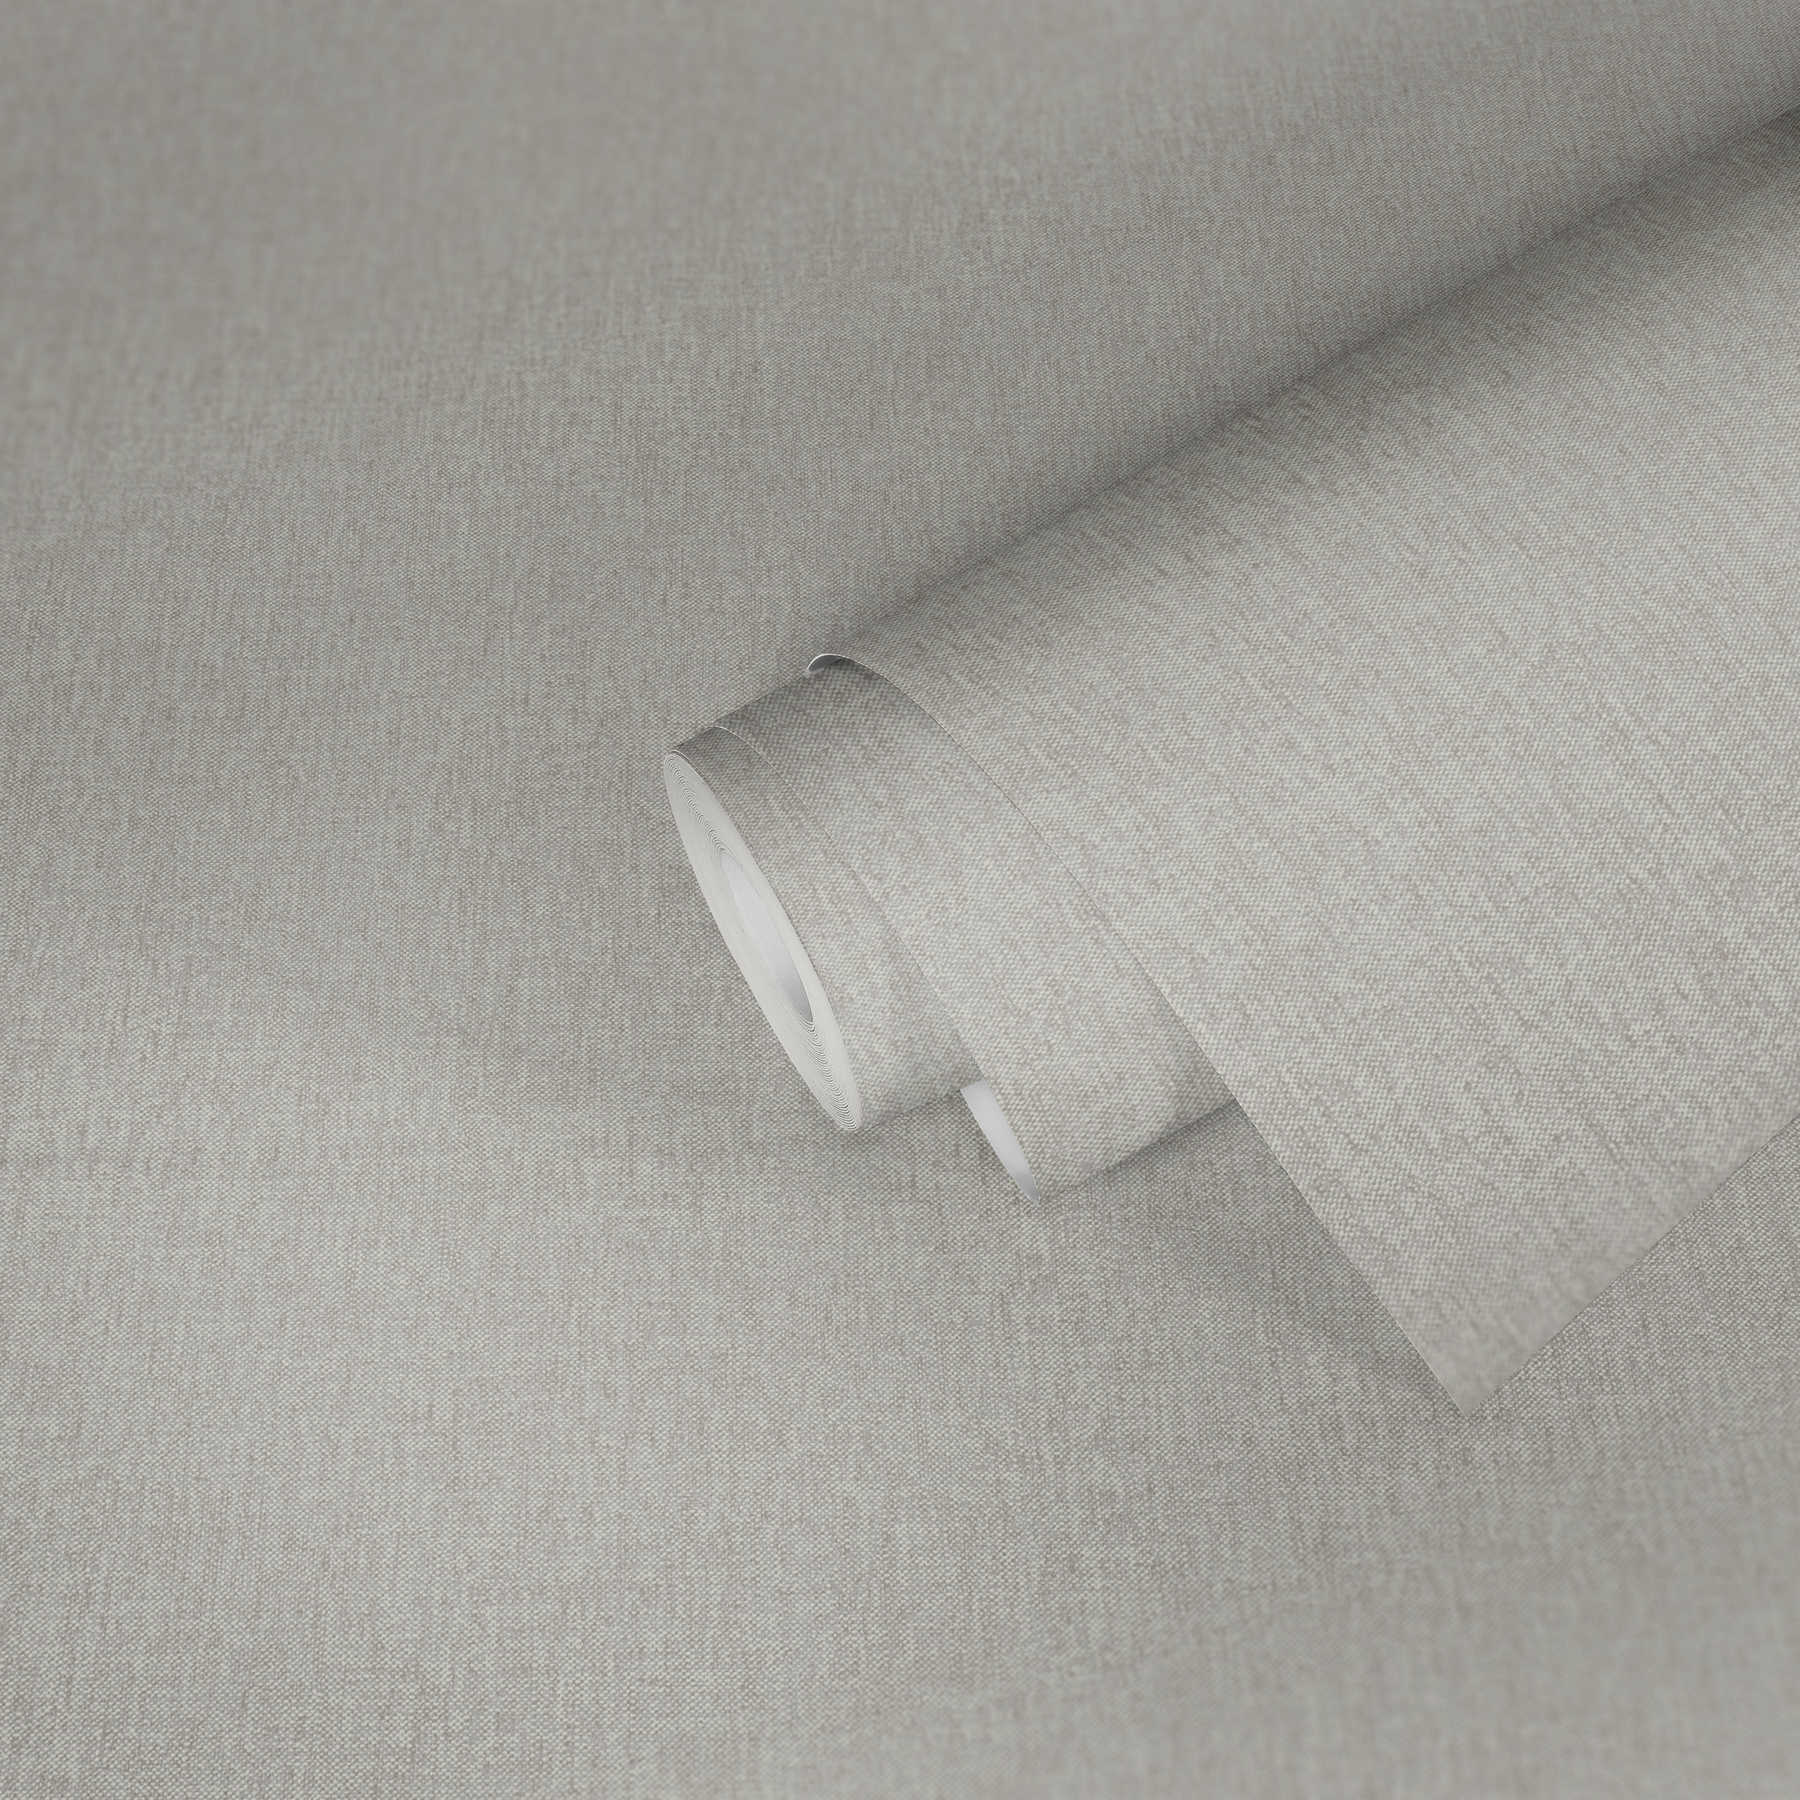             Papier peint vintage gris clair avec motif textile - gris, beige
        